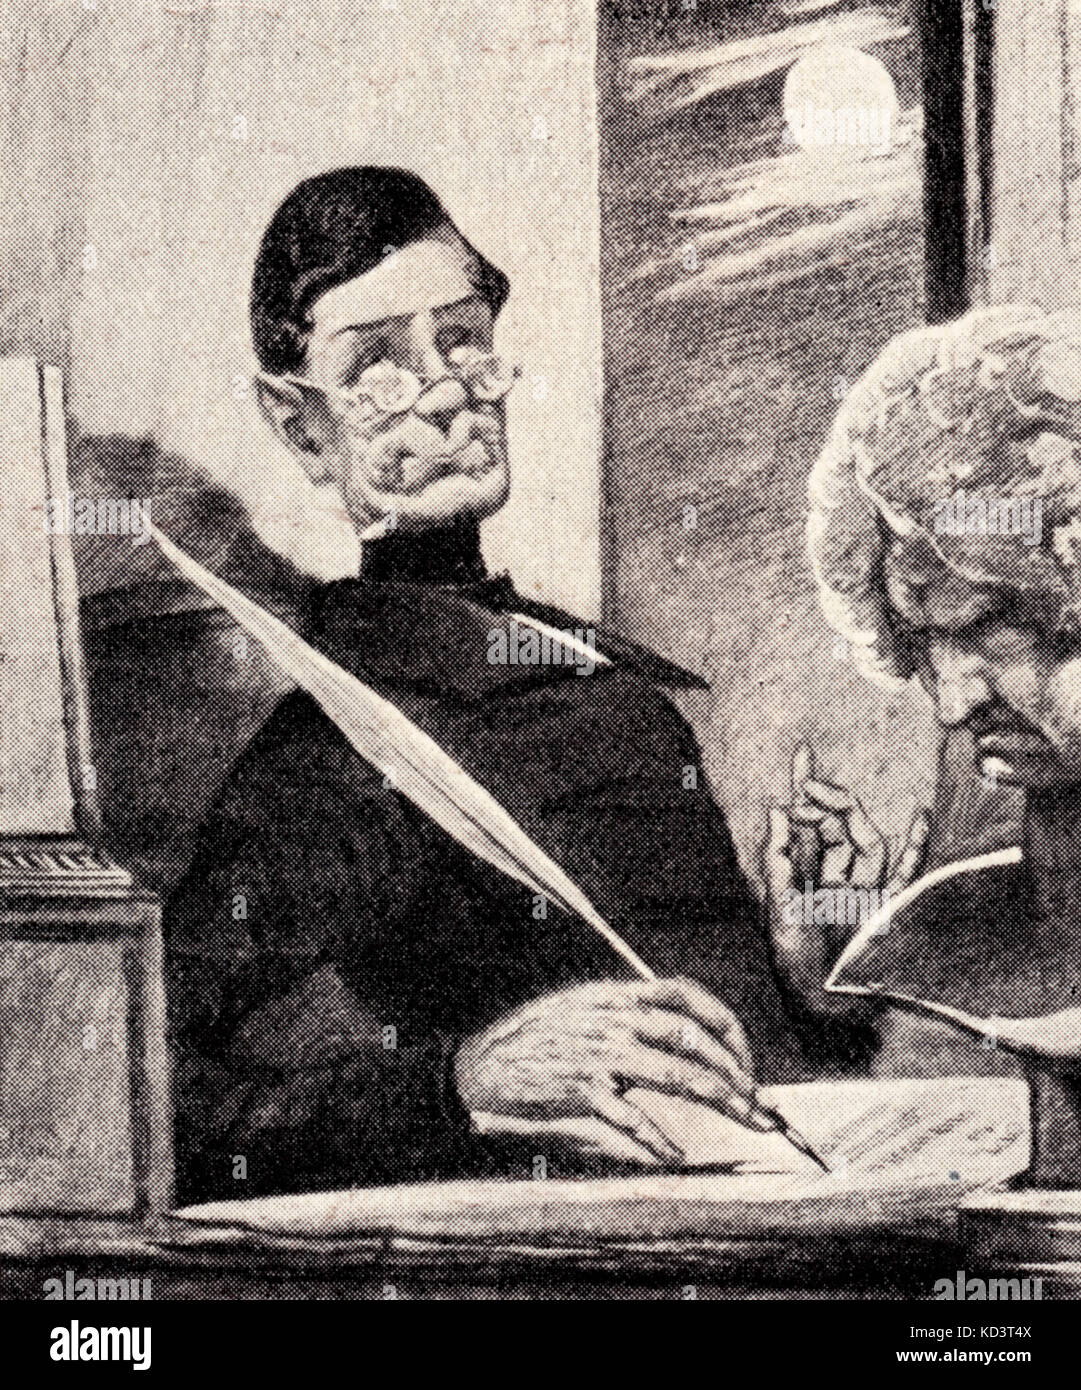 Compositor alemán Anton Schindler - Beethoven fiel compañero en sus últimos años - Caricatura de Mende. 1770-1827 Foto de stock